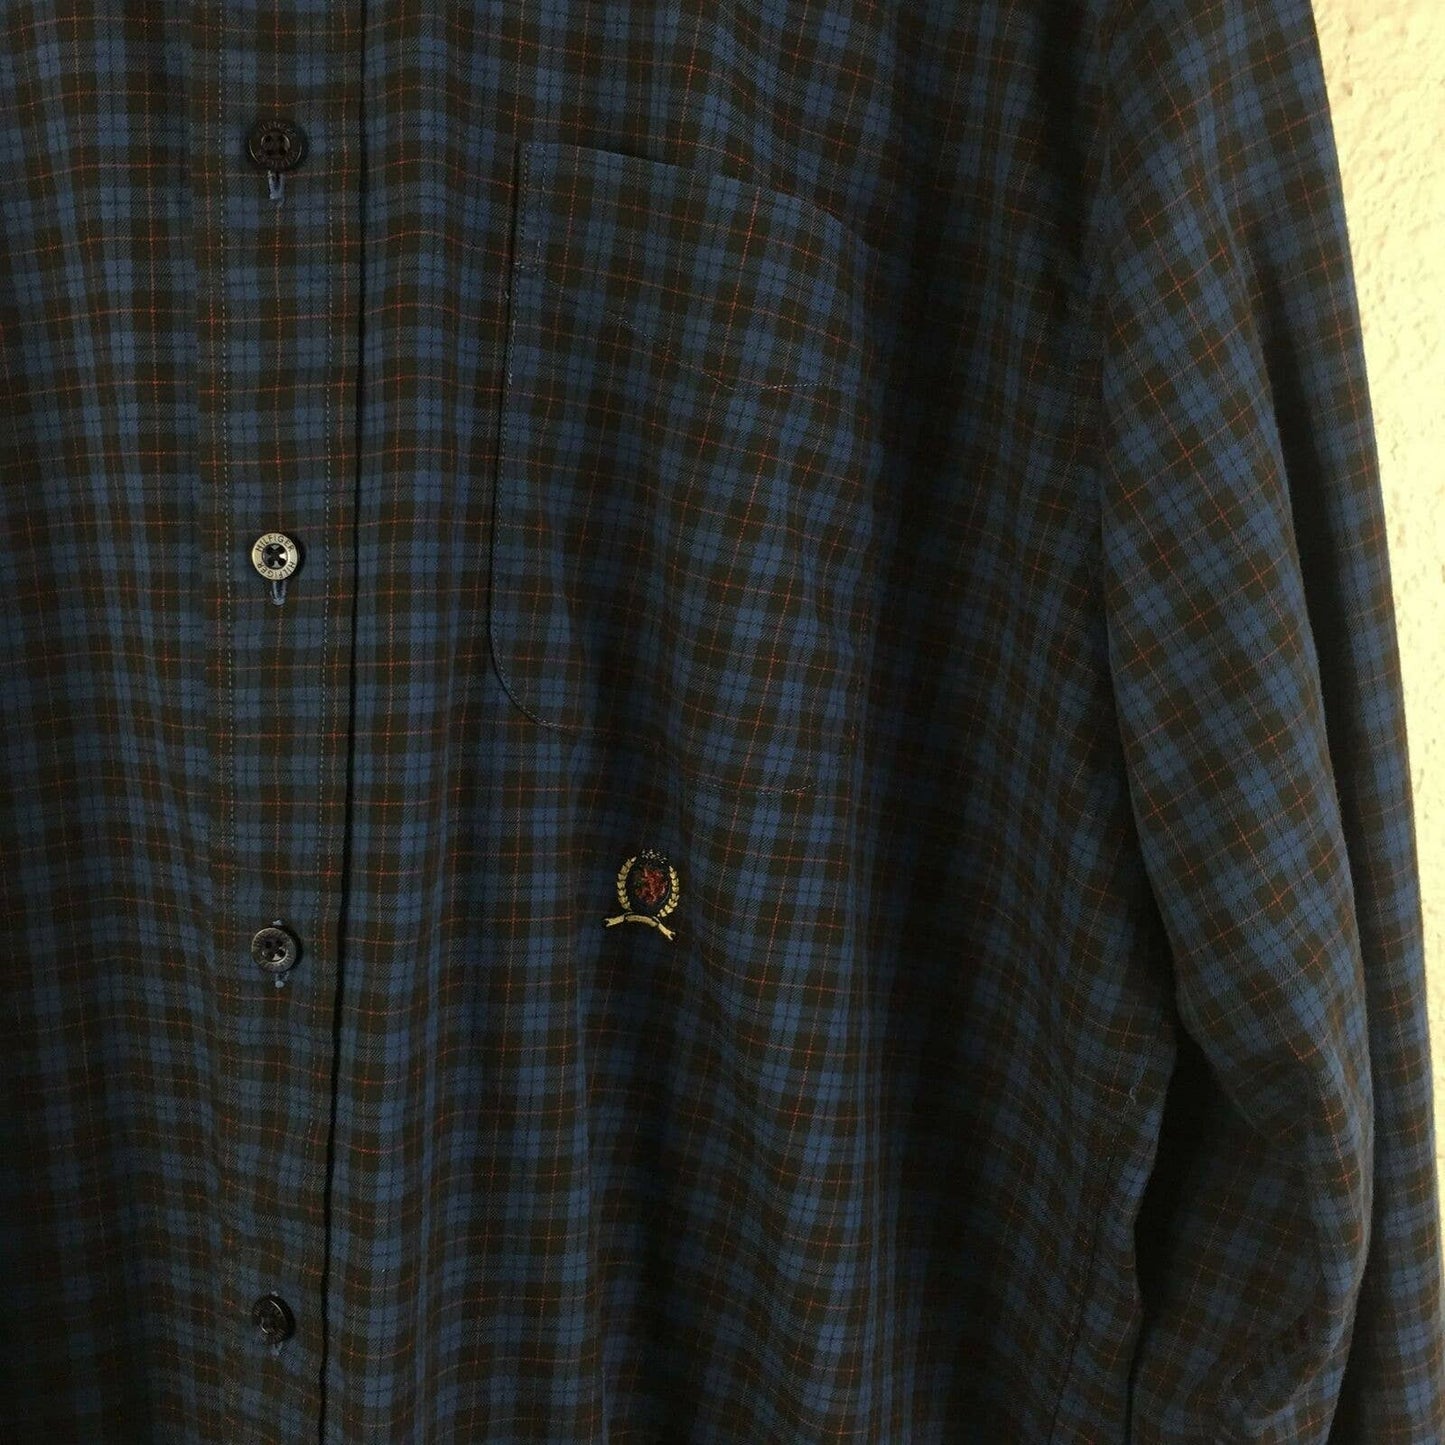 Tommy Hilfiger Blue Plaid Button Front Long Sleeve Shirt - Men's L